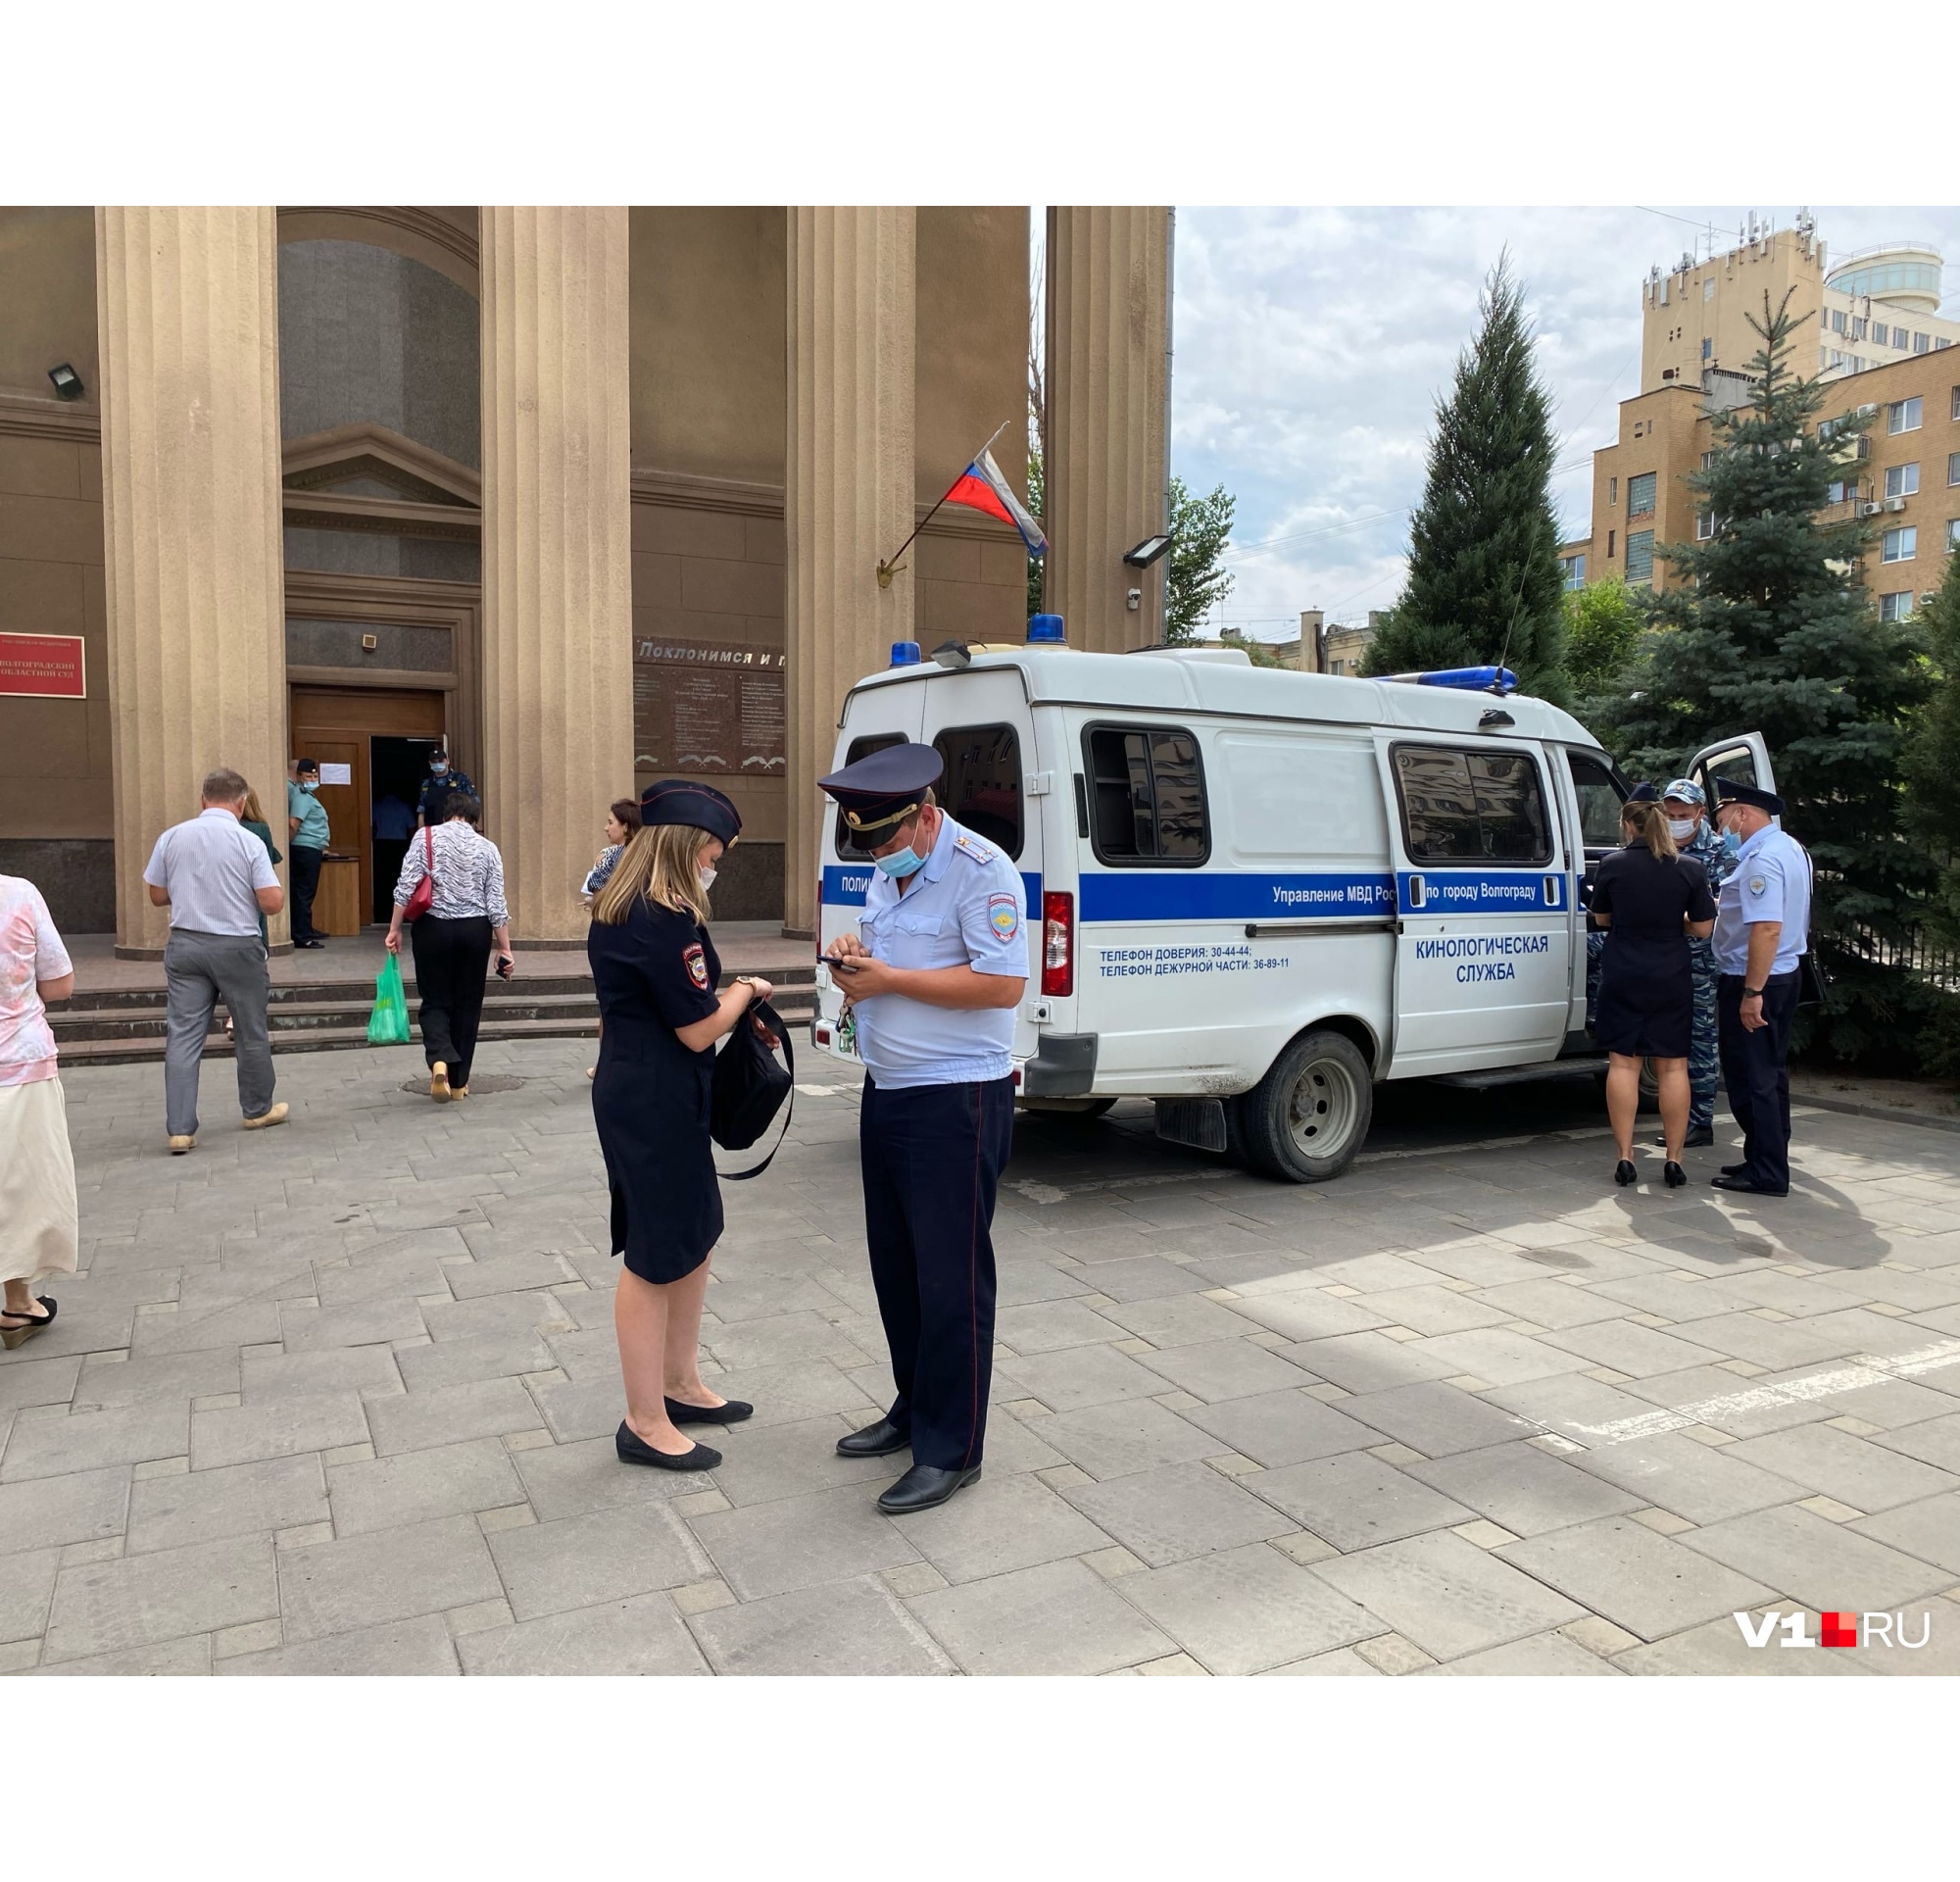 В Волгограде снова эвакуируют суды из-за сообщений о бомбе